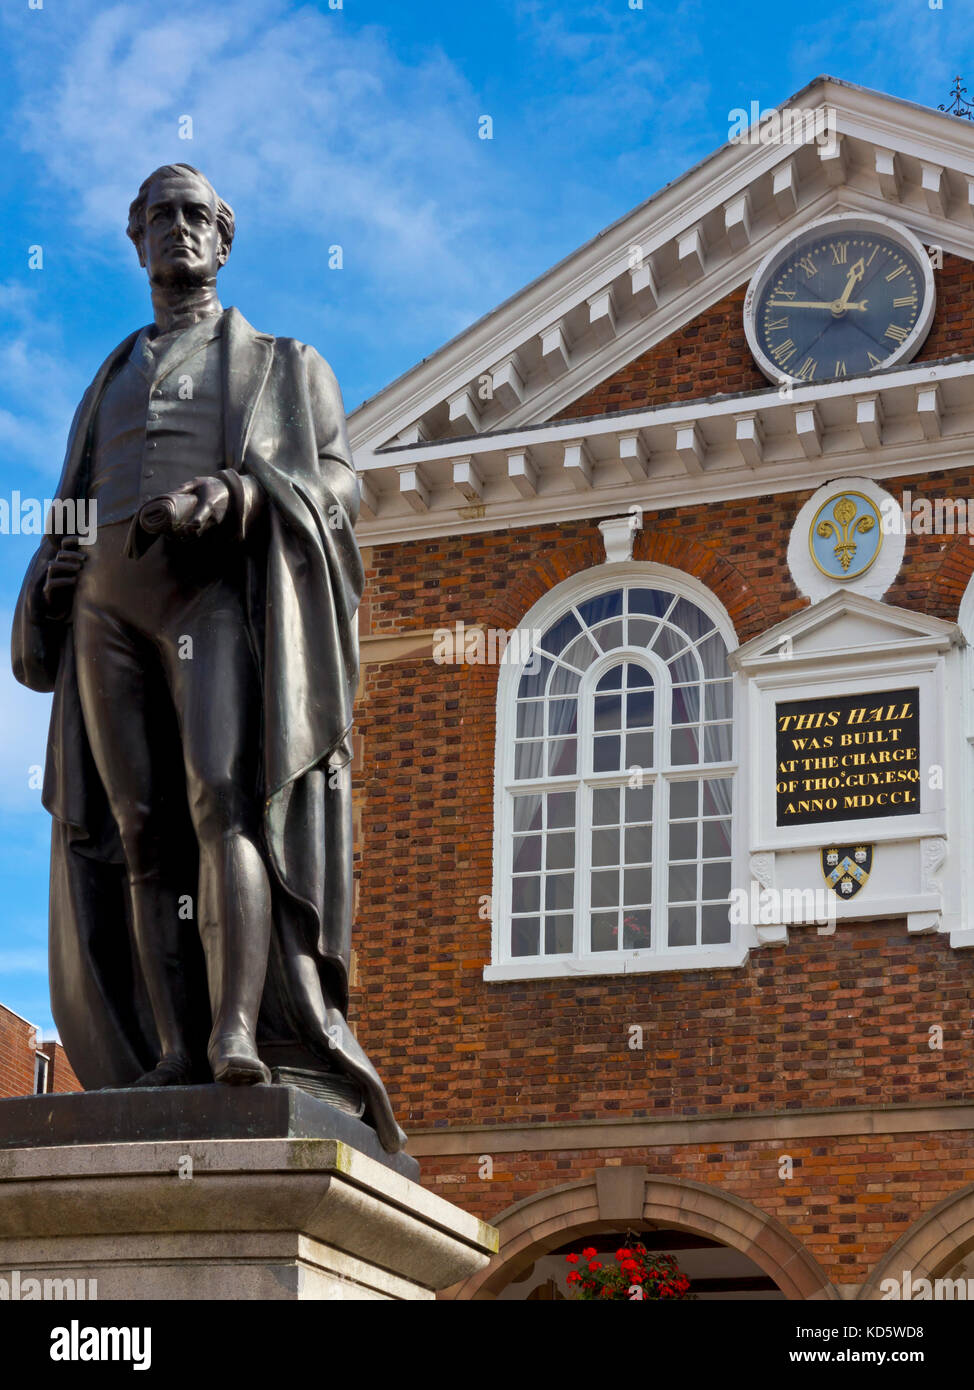 Statue des viktorianischen Premierminister Sir Robert Peel MP vor Rathaus Tamworth Staffordshire England Großbritannien Stockfoto